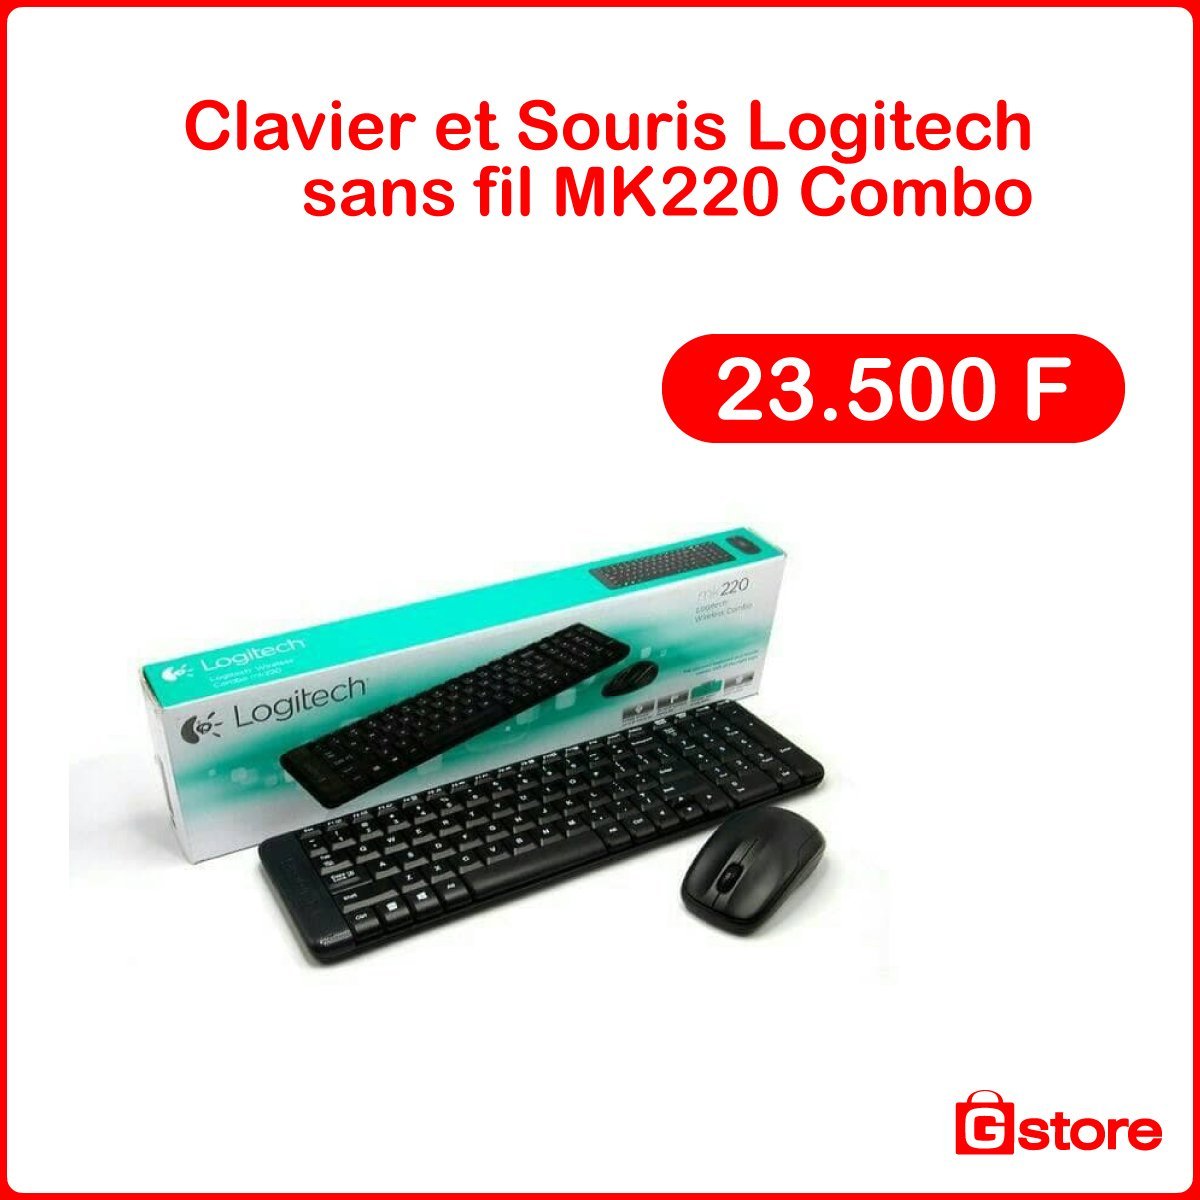 Clavier et Souris Logitech sans fil MK220 Combo